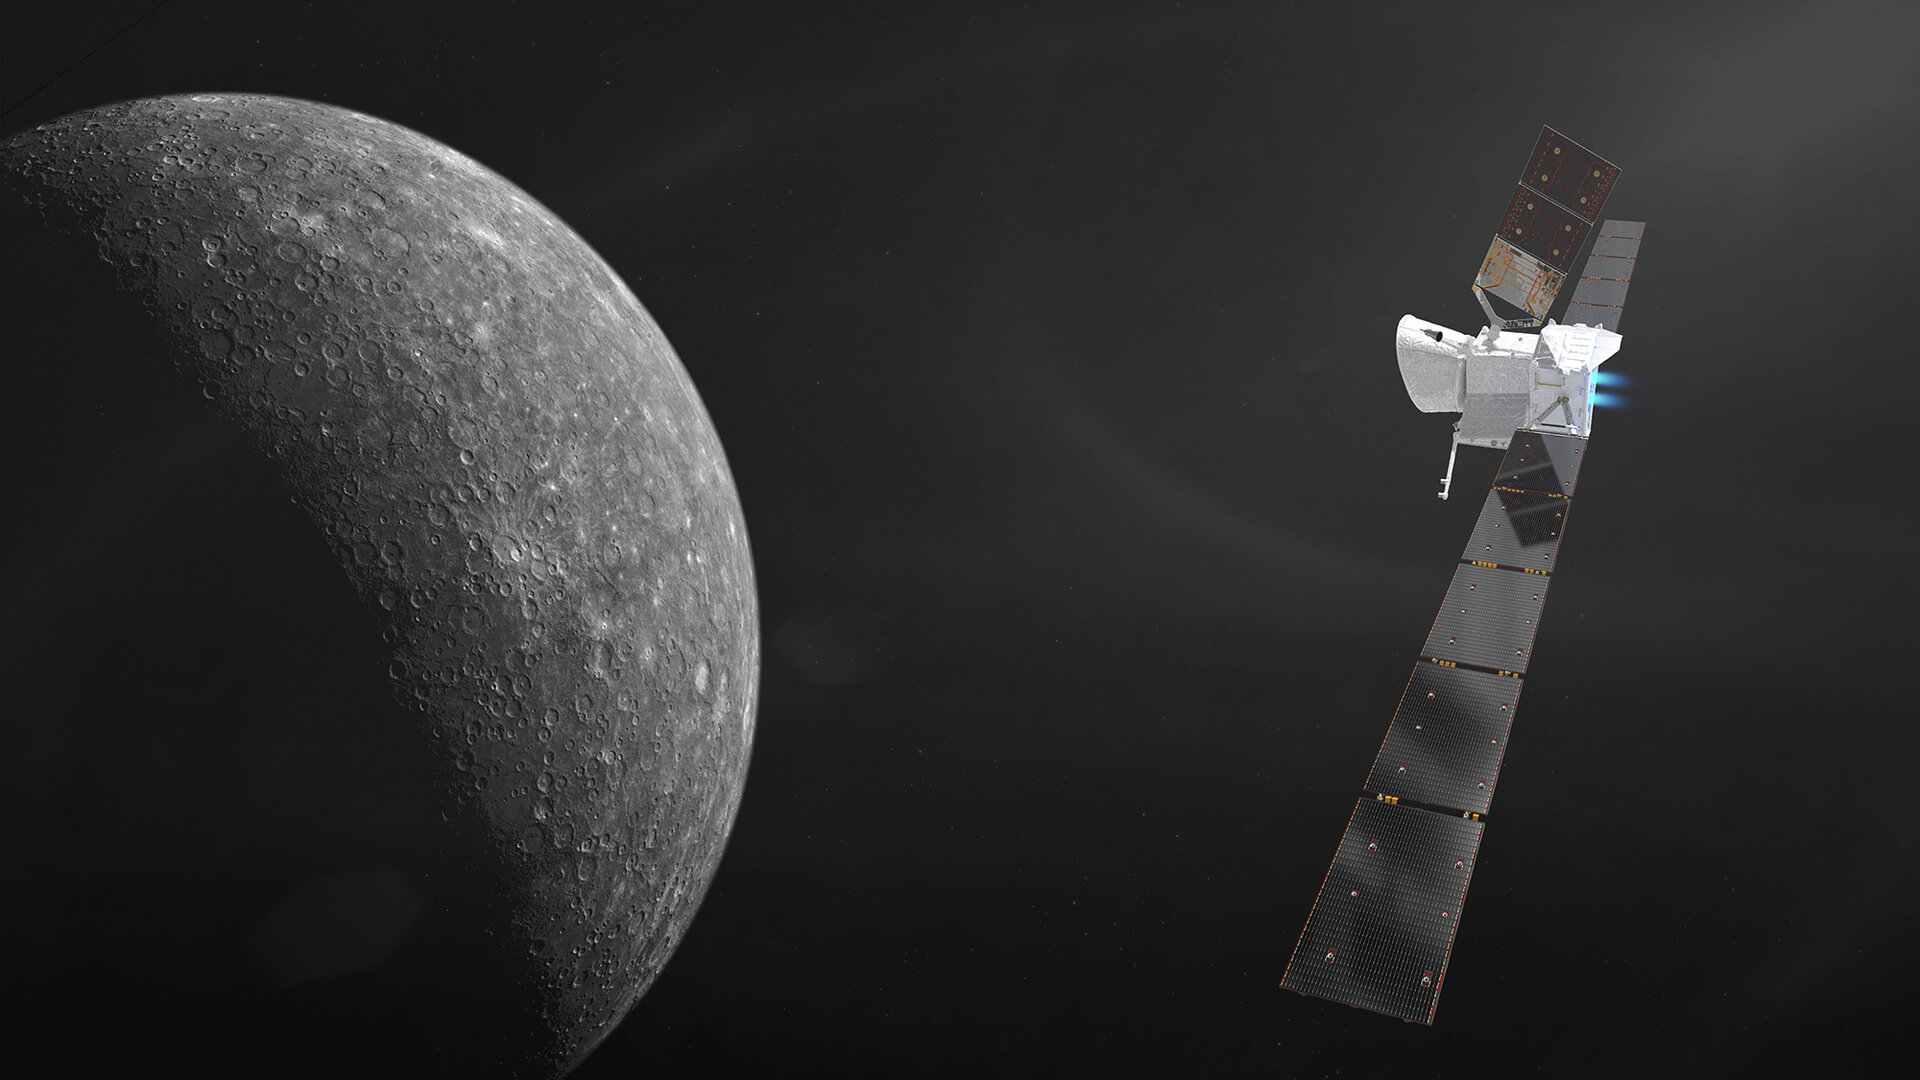 ASI - Bepi Colombo: Serena osserva la magnetosfera di Mercurio